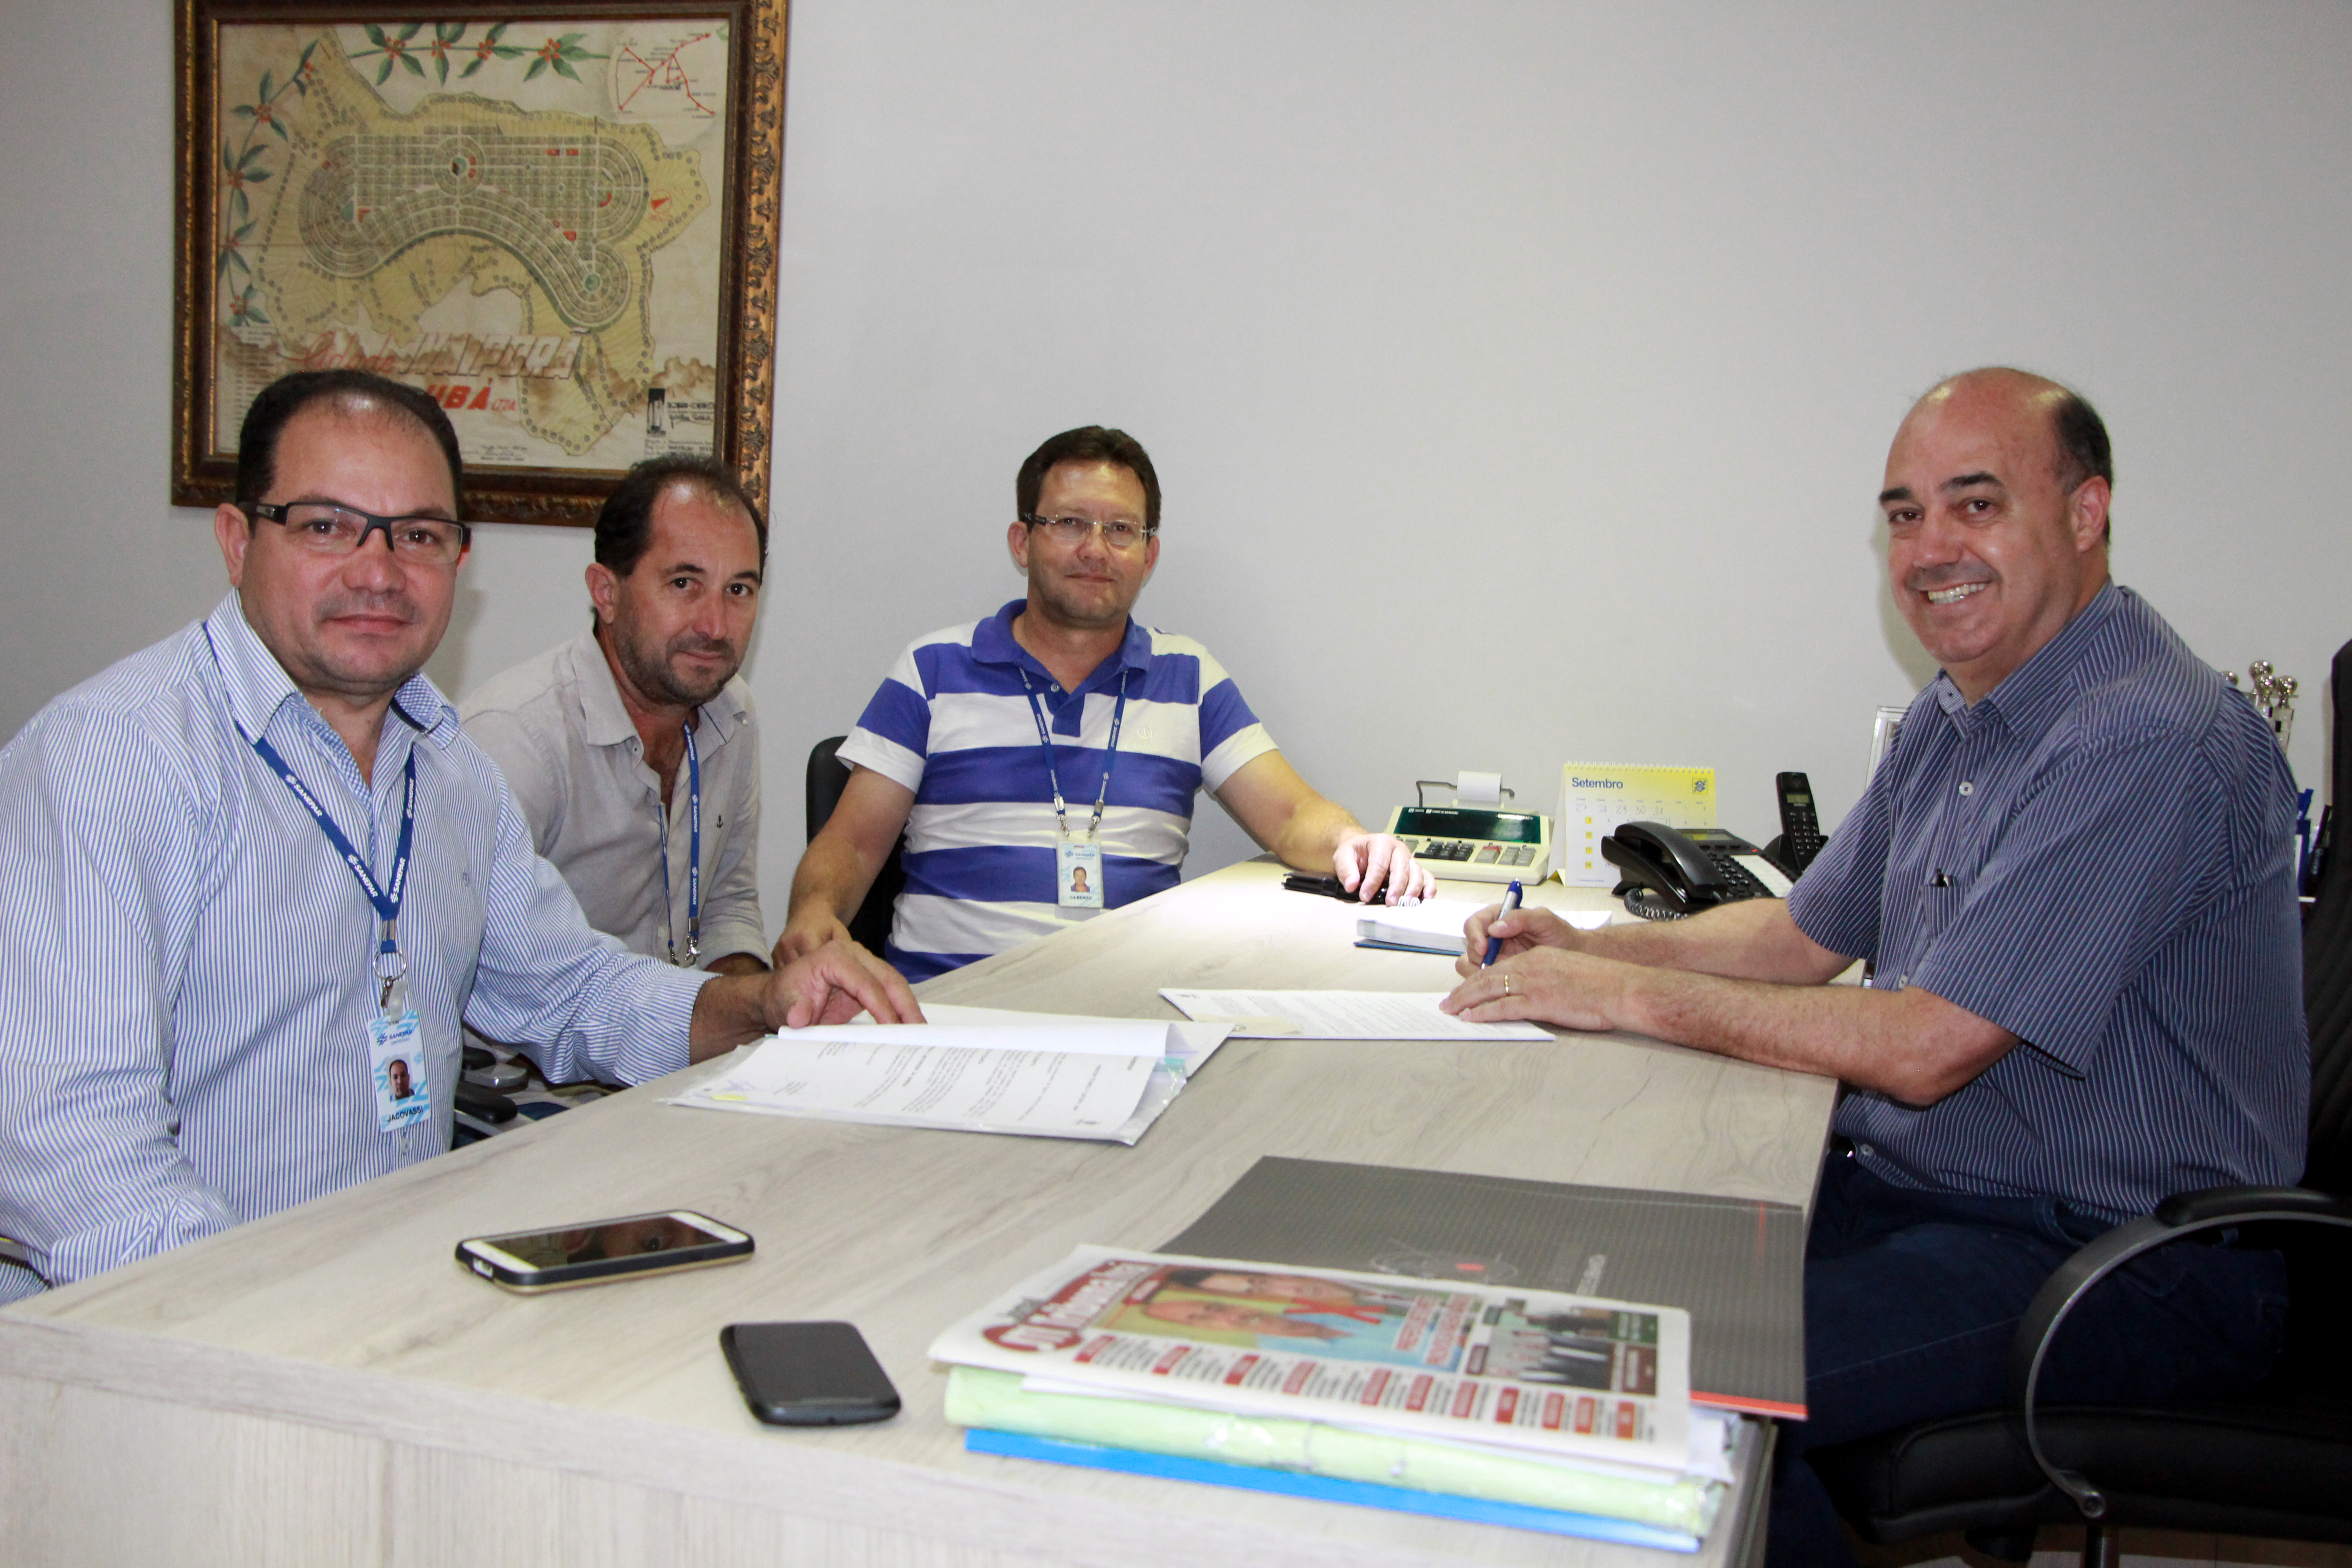 O diretor regional Jacovassi e Taborda acompanhados do coordenador de clientes, Reginaldo Souza (Foto: Divulgação)